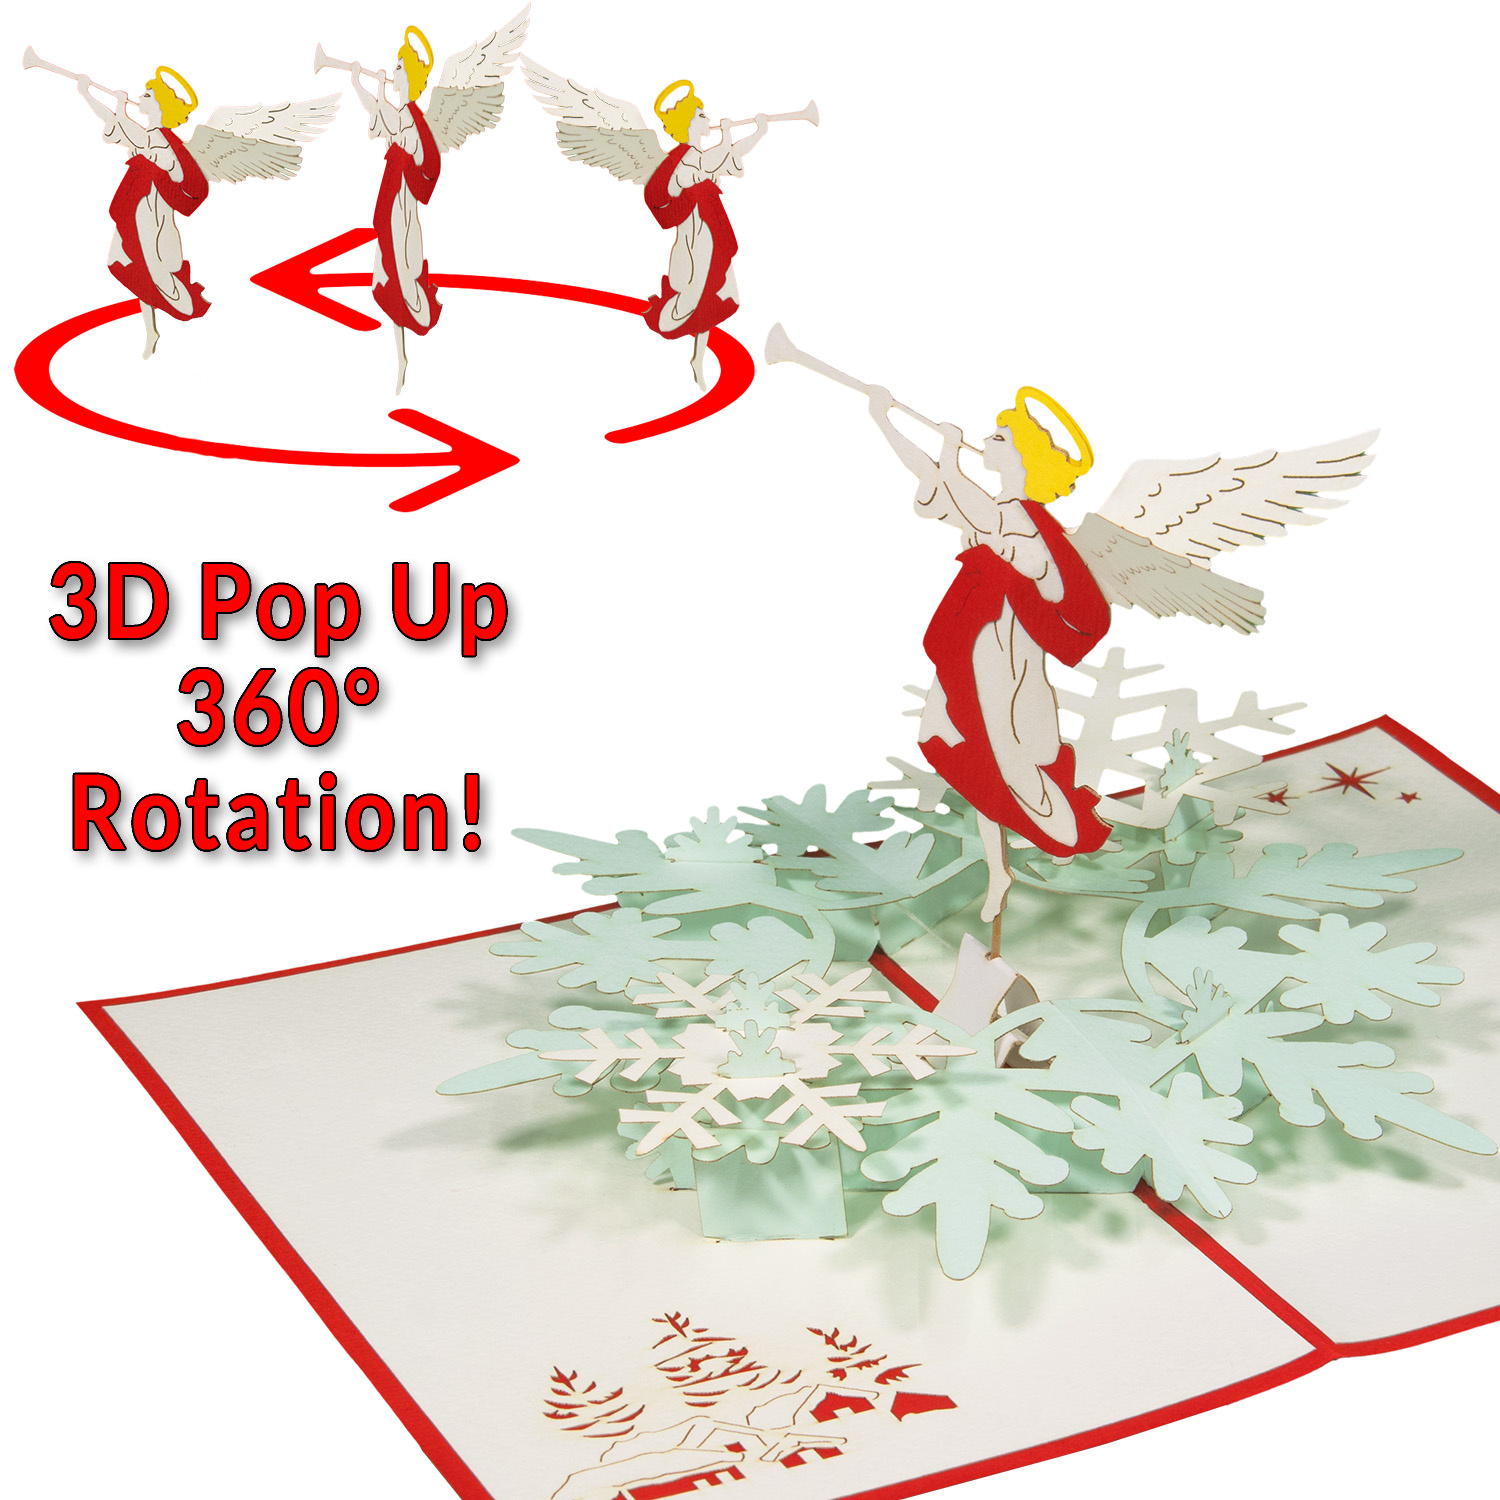 LINPOPUP Pop-Up Karte Weihnachten, Weihnachtskarte, LINPopUp®, LIN17827, Weihnachtsgeschenk, Rotierender Engel mit Flöte, N462